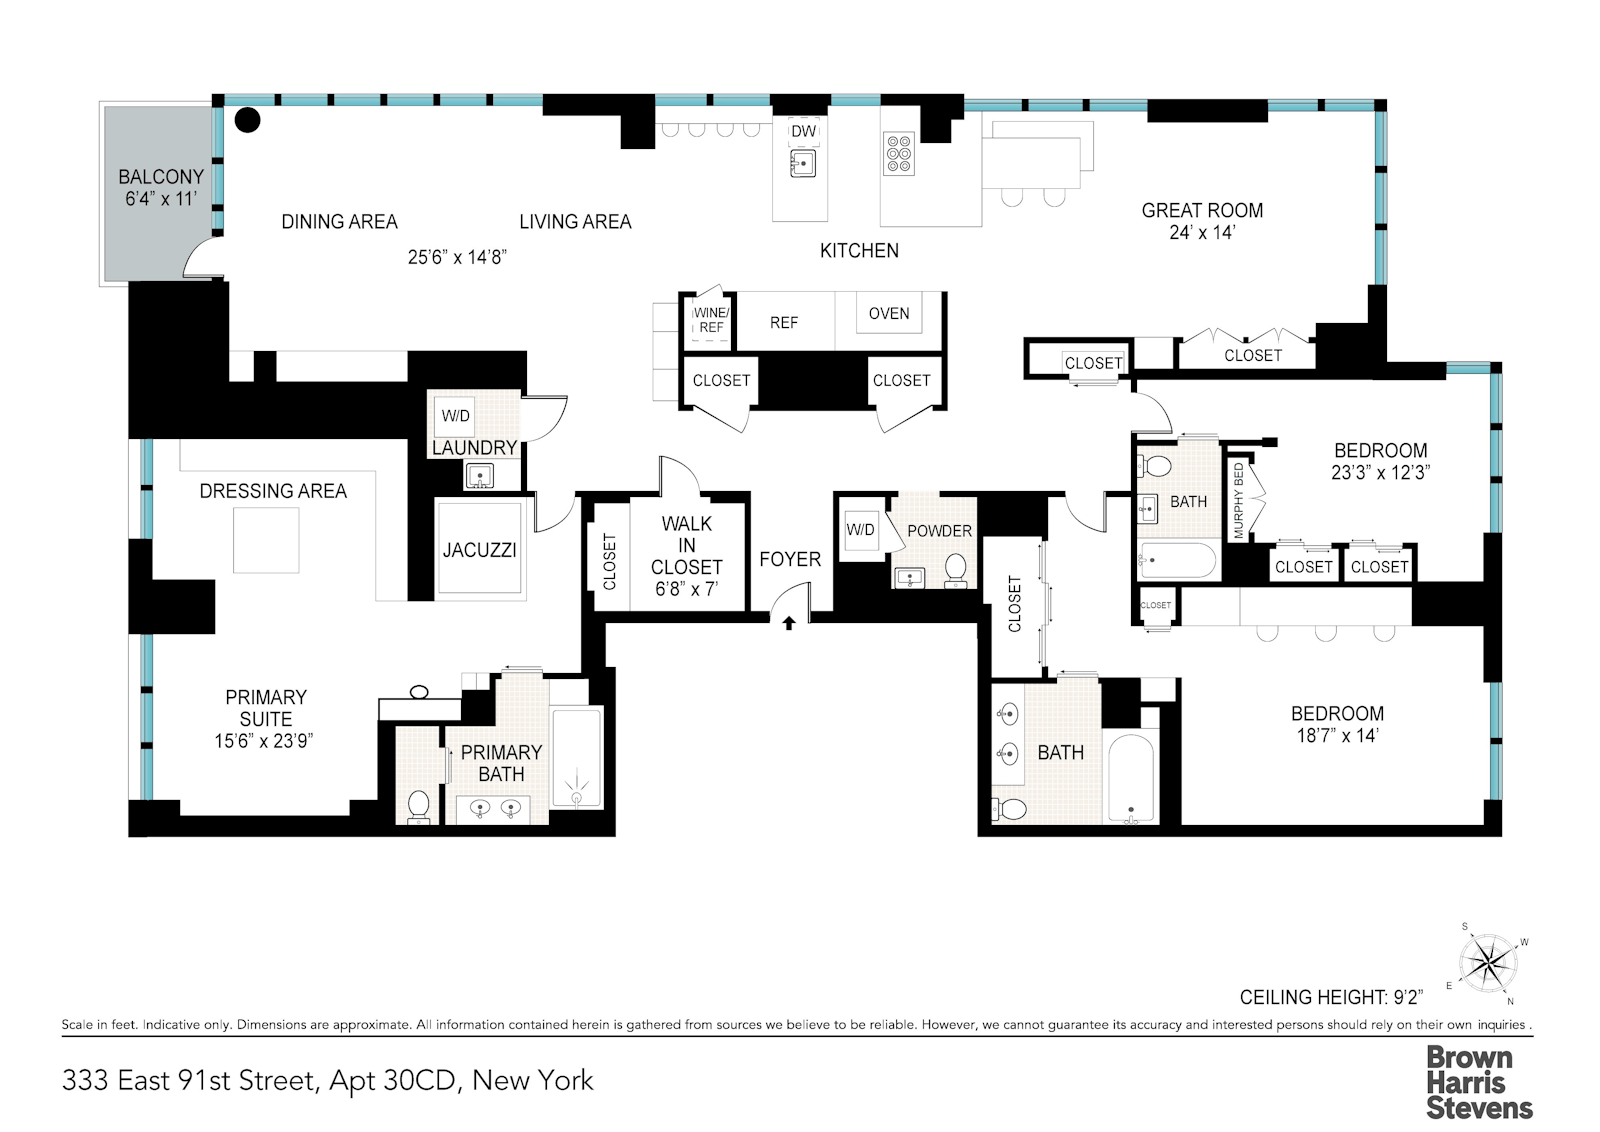 Floorplan for 333 East 91st Street, 30CD